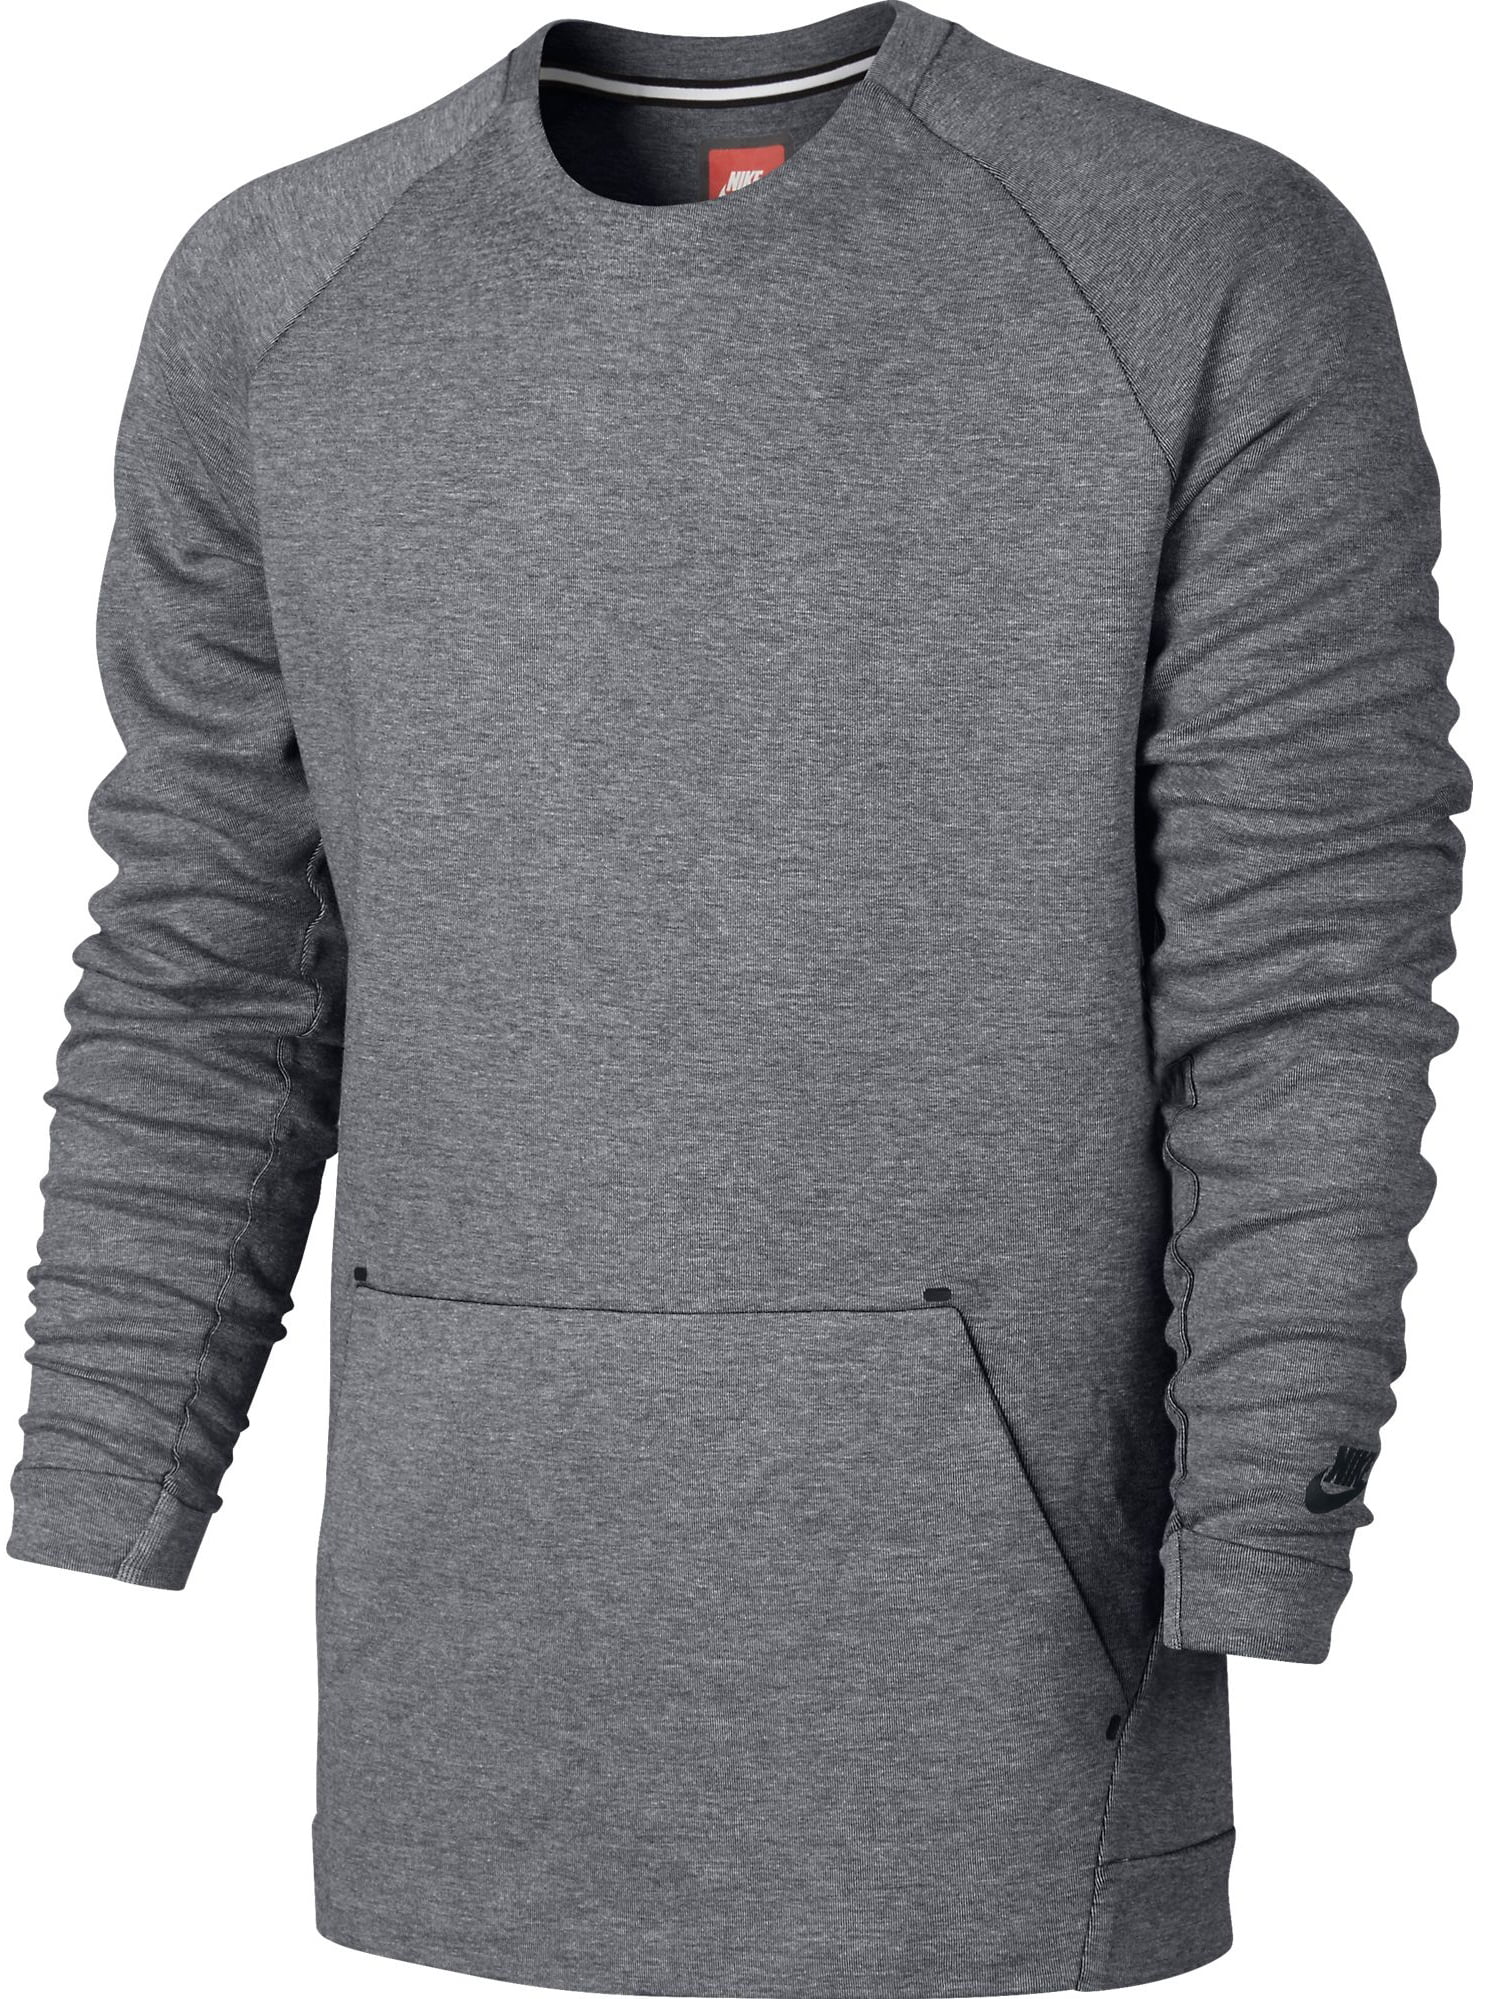 Nike Sportswear Tech Fleece Crew Neck Men's Sweatshirt Grey 805140-091 ...